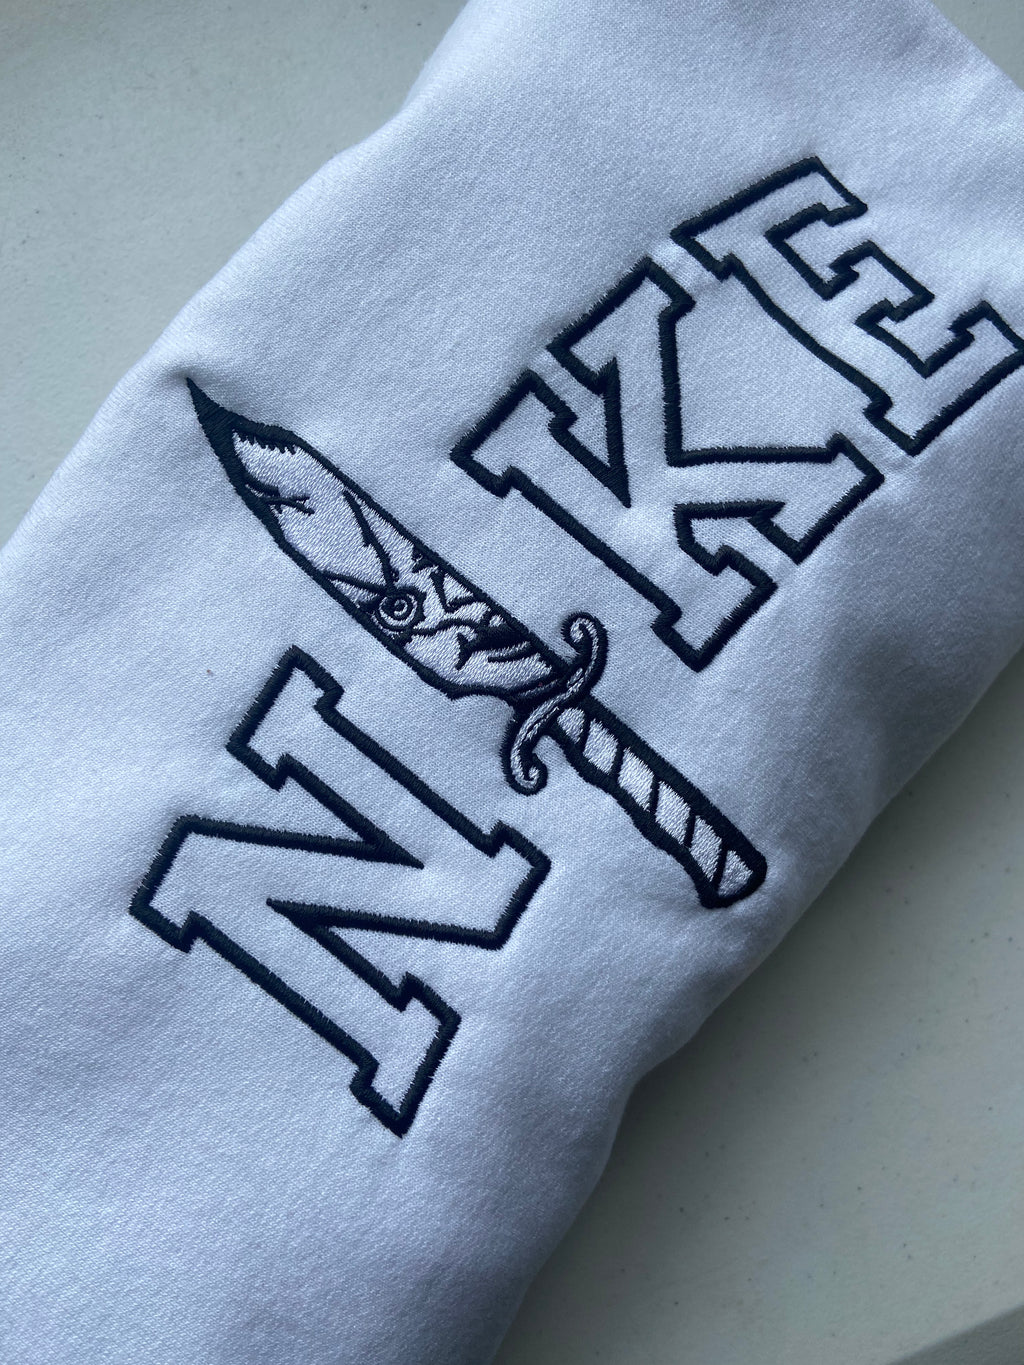 Chucky white NKE embroidered sweatshirt